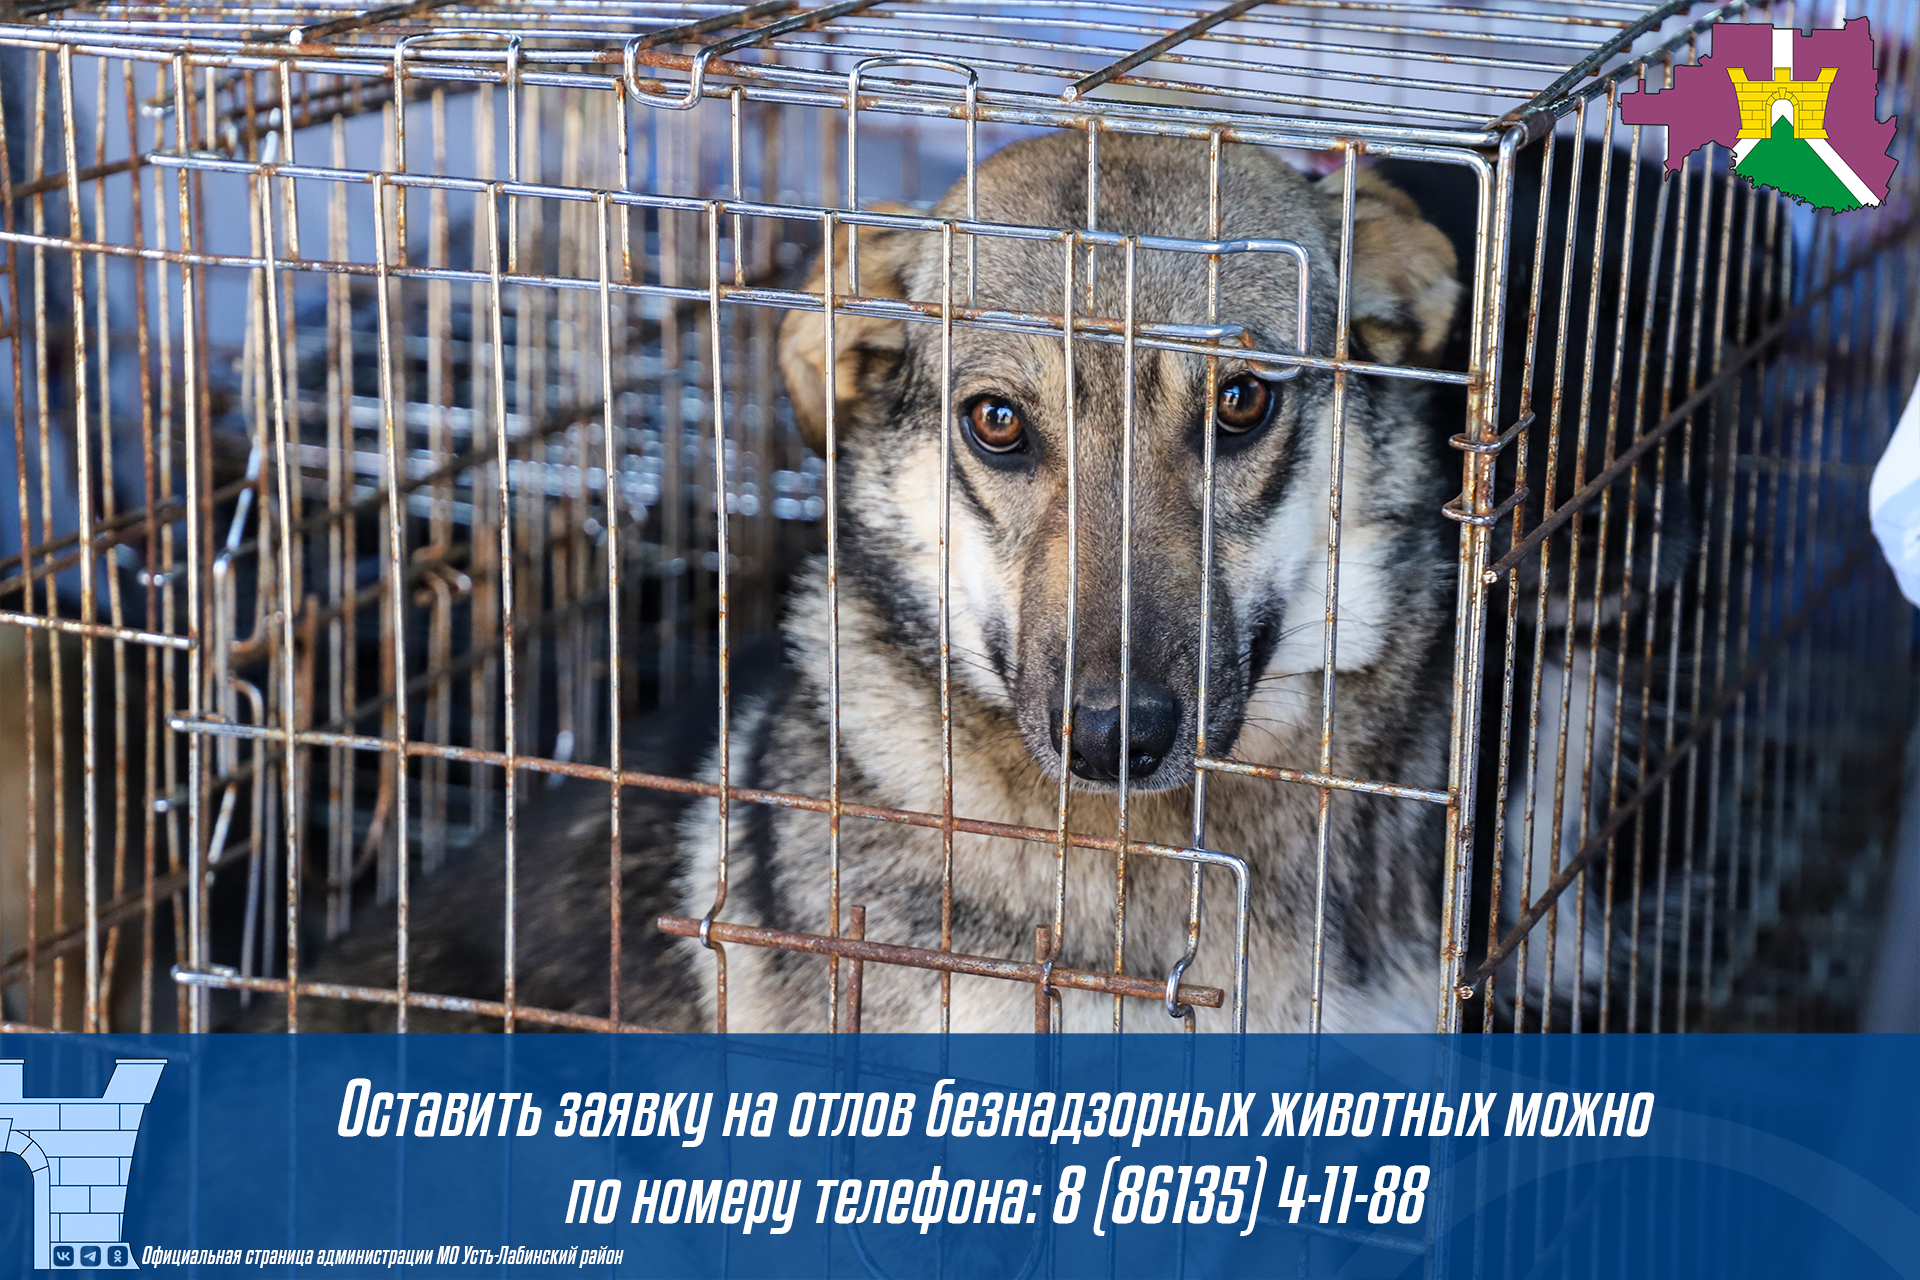 Жители Усть-Лабинского района могут оставить заявку на отлов безнадзорных животных